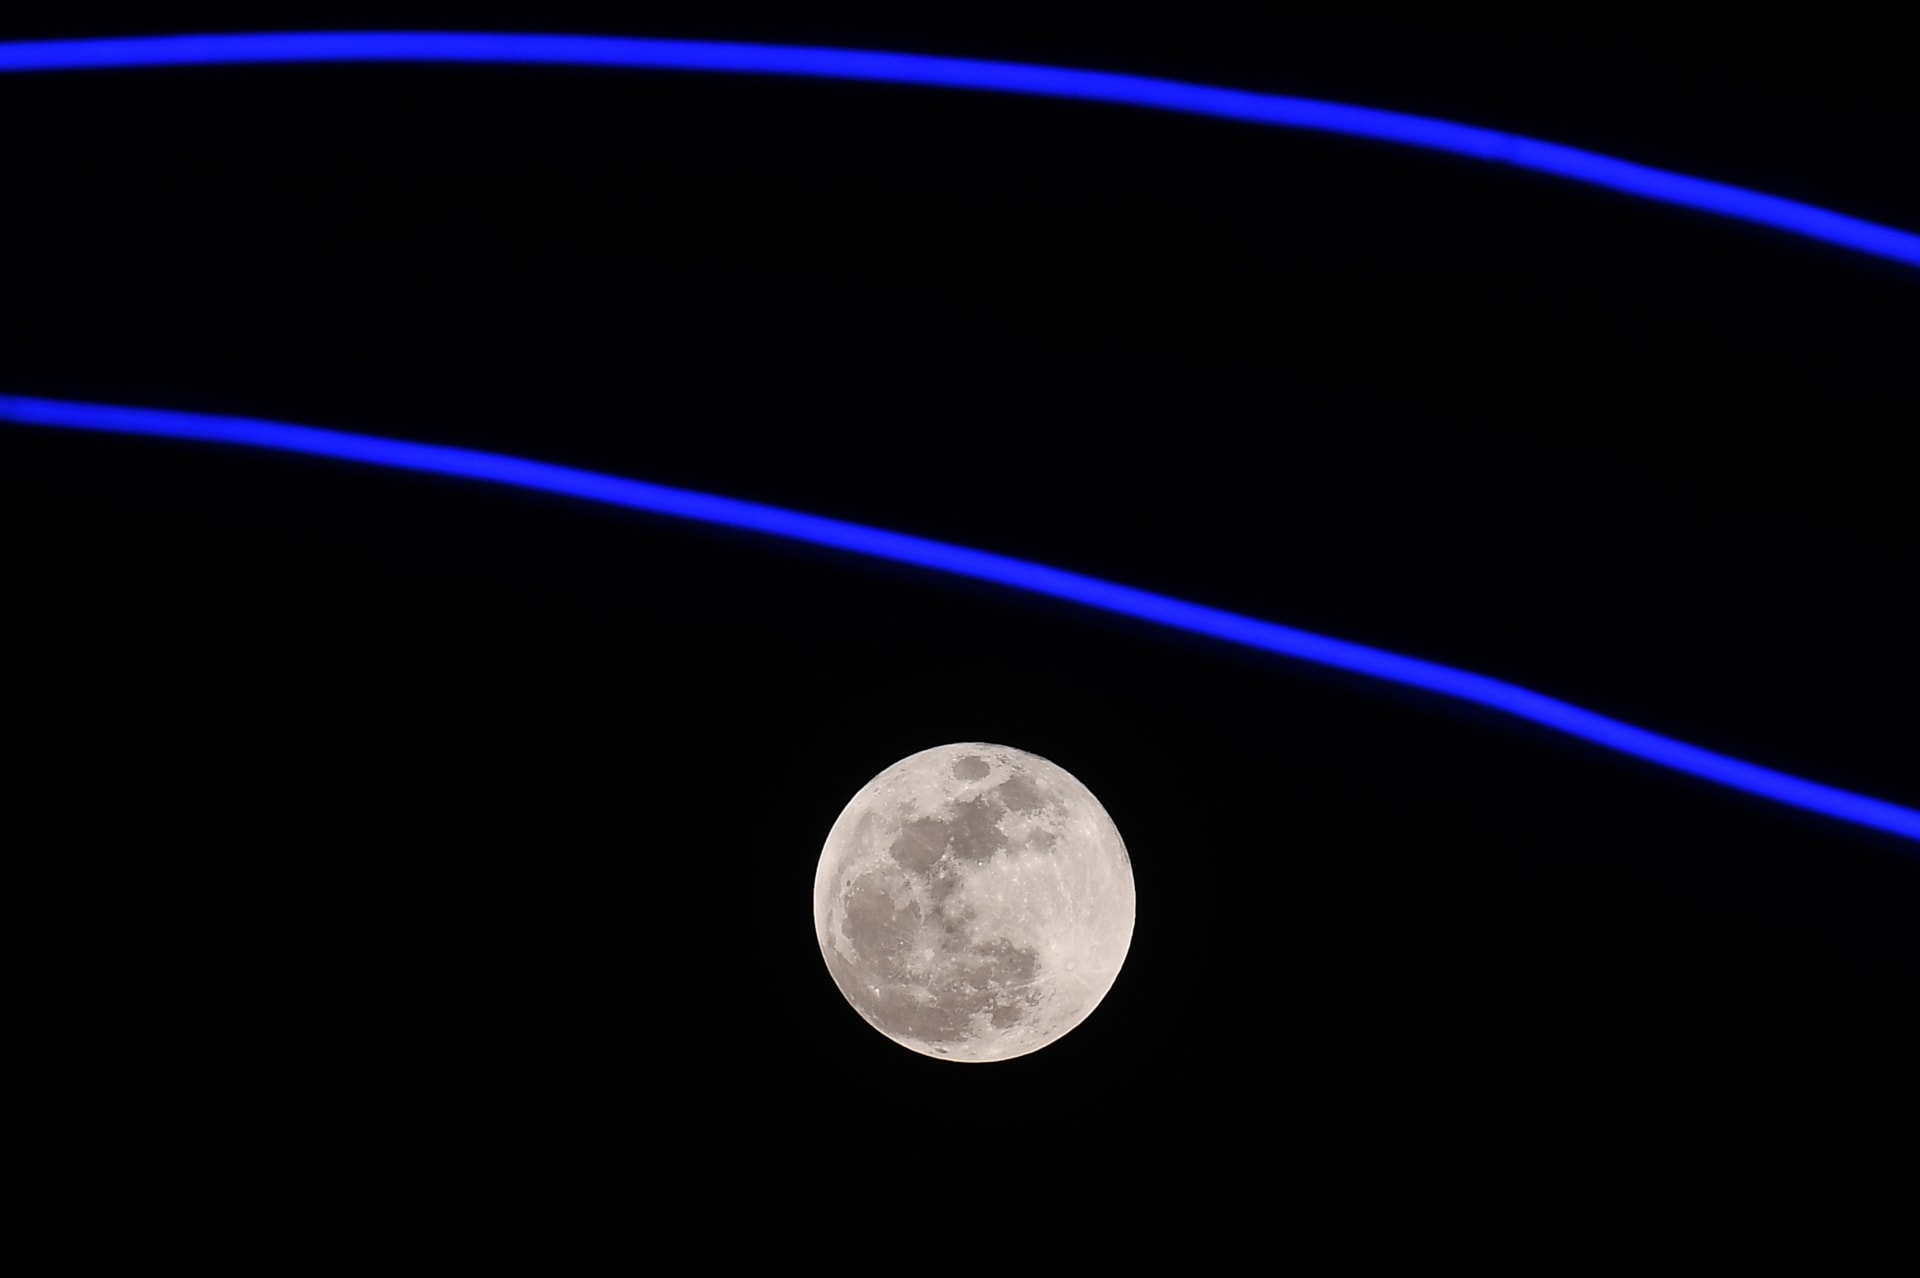 اساطير القمر الأزرق و "سر الطاقة" تثير تفاعلا ومركز الفلك يوضح الظاهرة